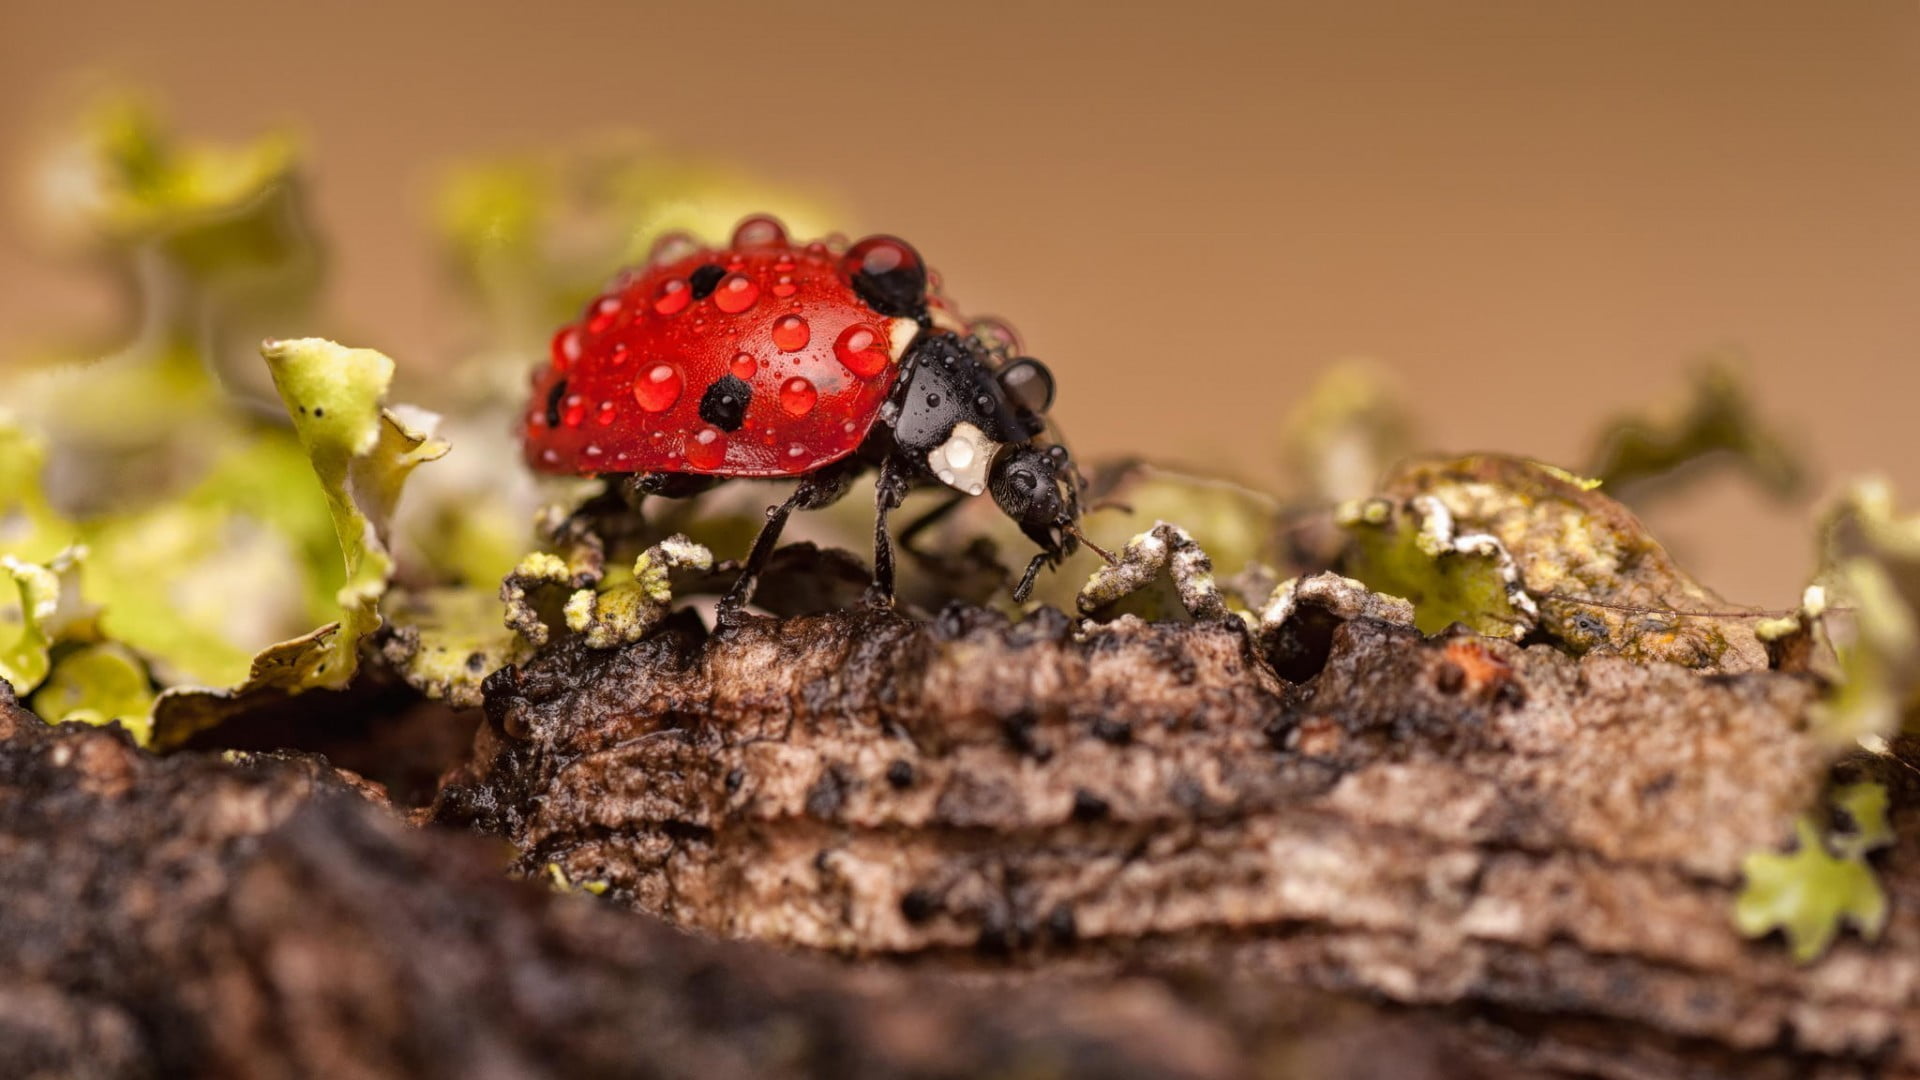 macro photography of ladybug on brown wood